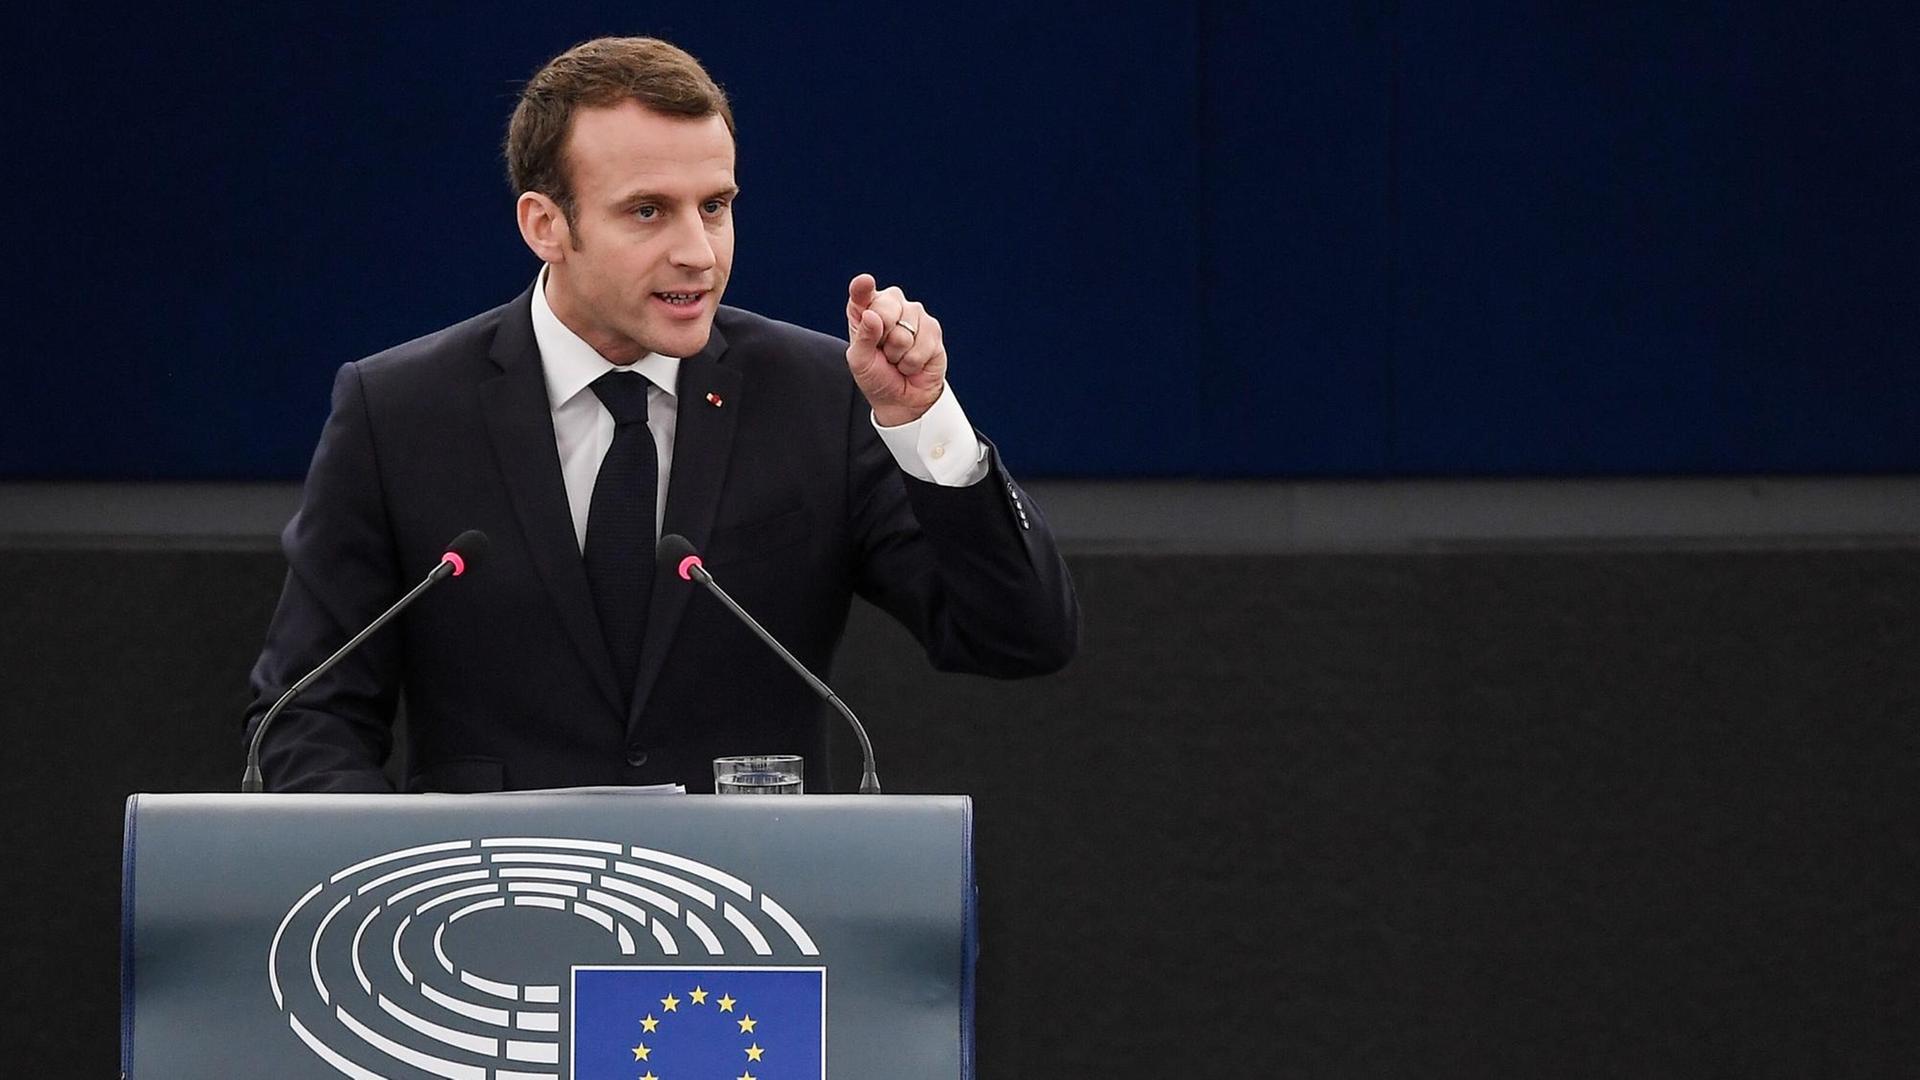 Macron steht am Rednerpult und zeigt mit dem linken Zeigefinger in Richtung der Abgeordneten.